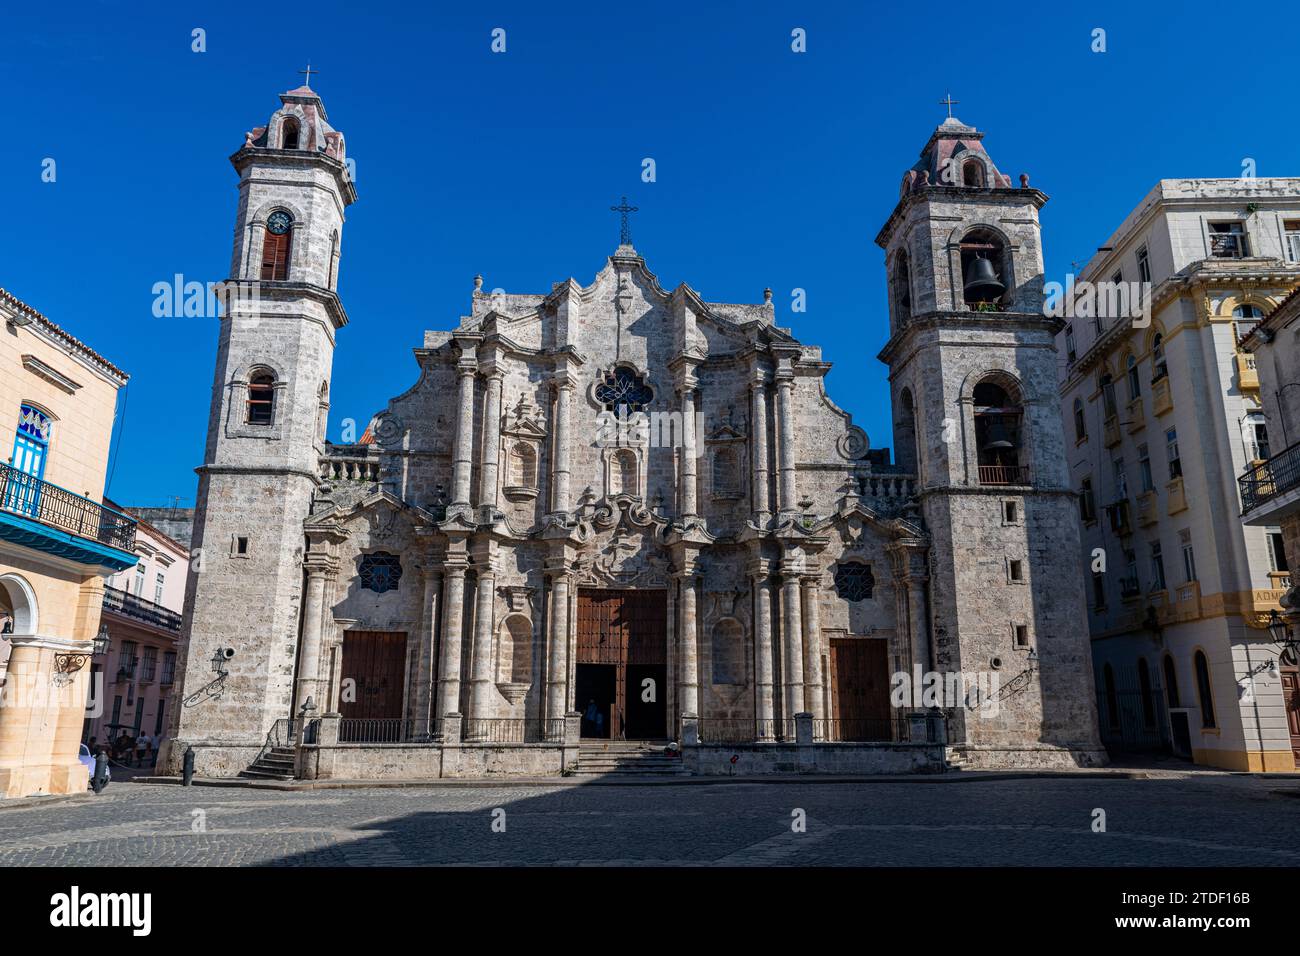 Cattedrale nella città vecchia di l'Avana, sito patrimonio dell'umanità dell'UNESCO, l'Avana, Cuba, Indie occidentali, America centrale Foto Stock